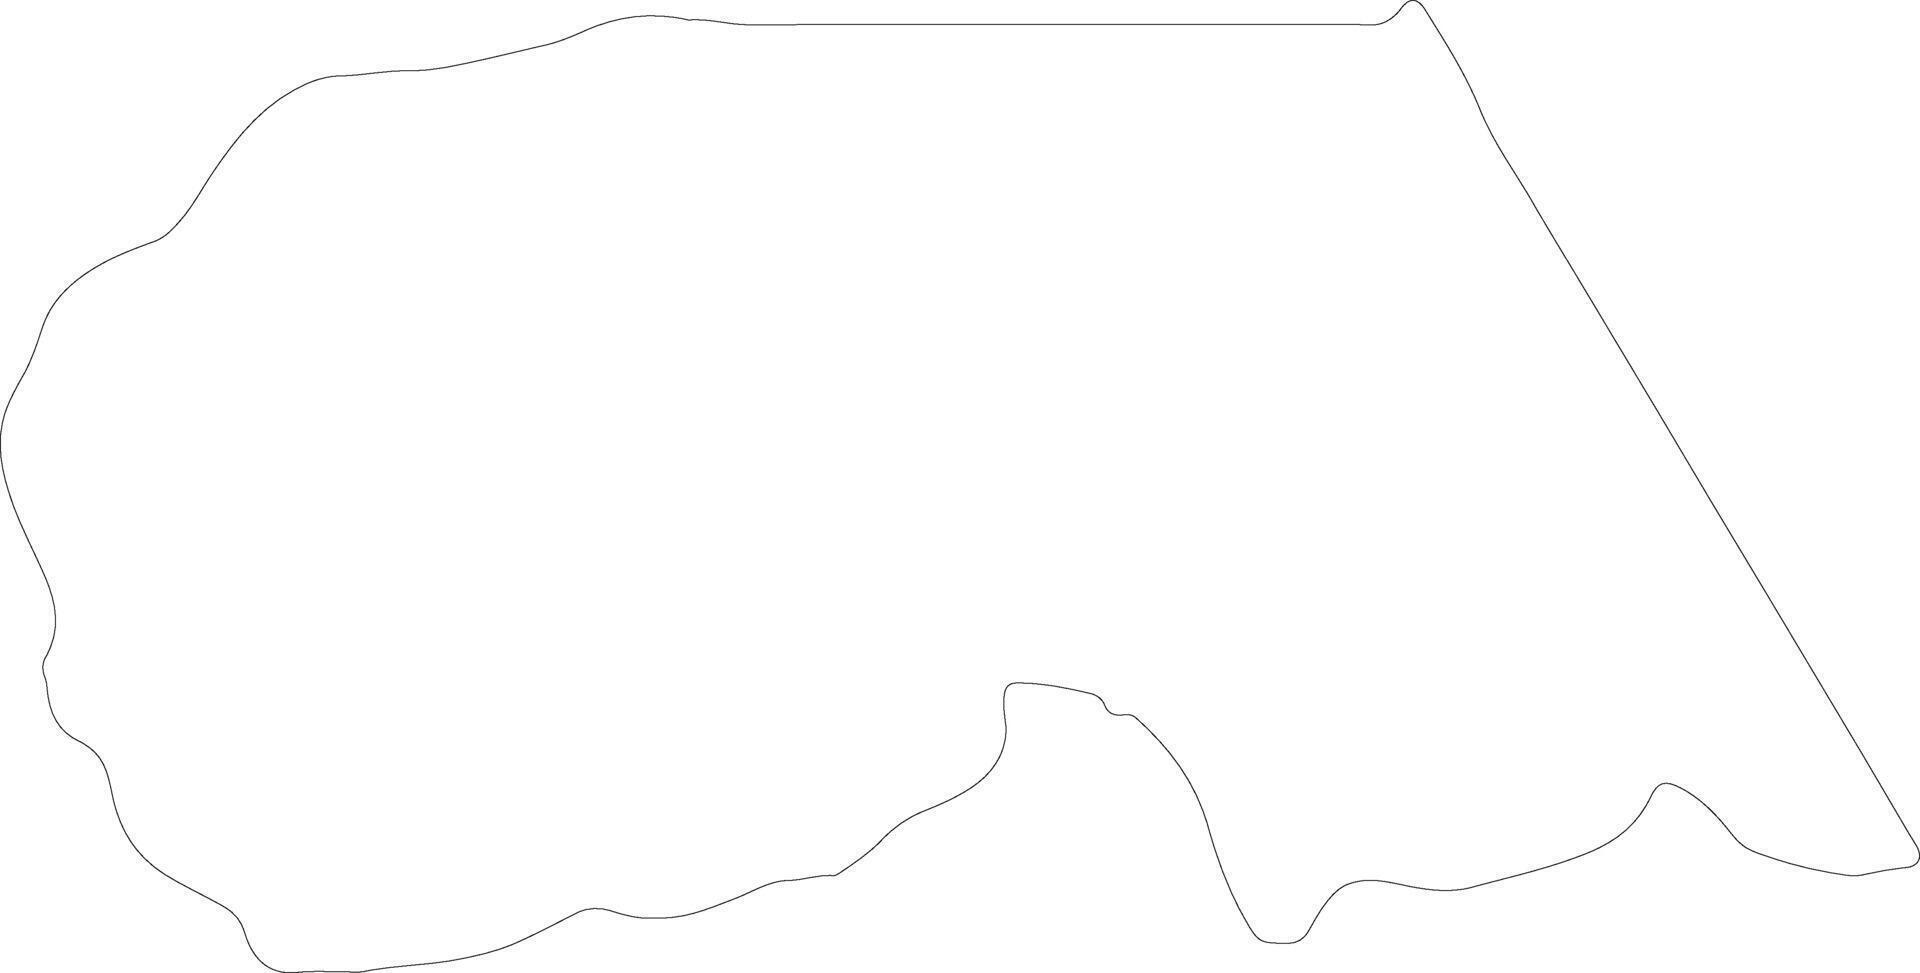 maekel eritrea översikt Karta vektor